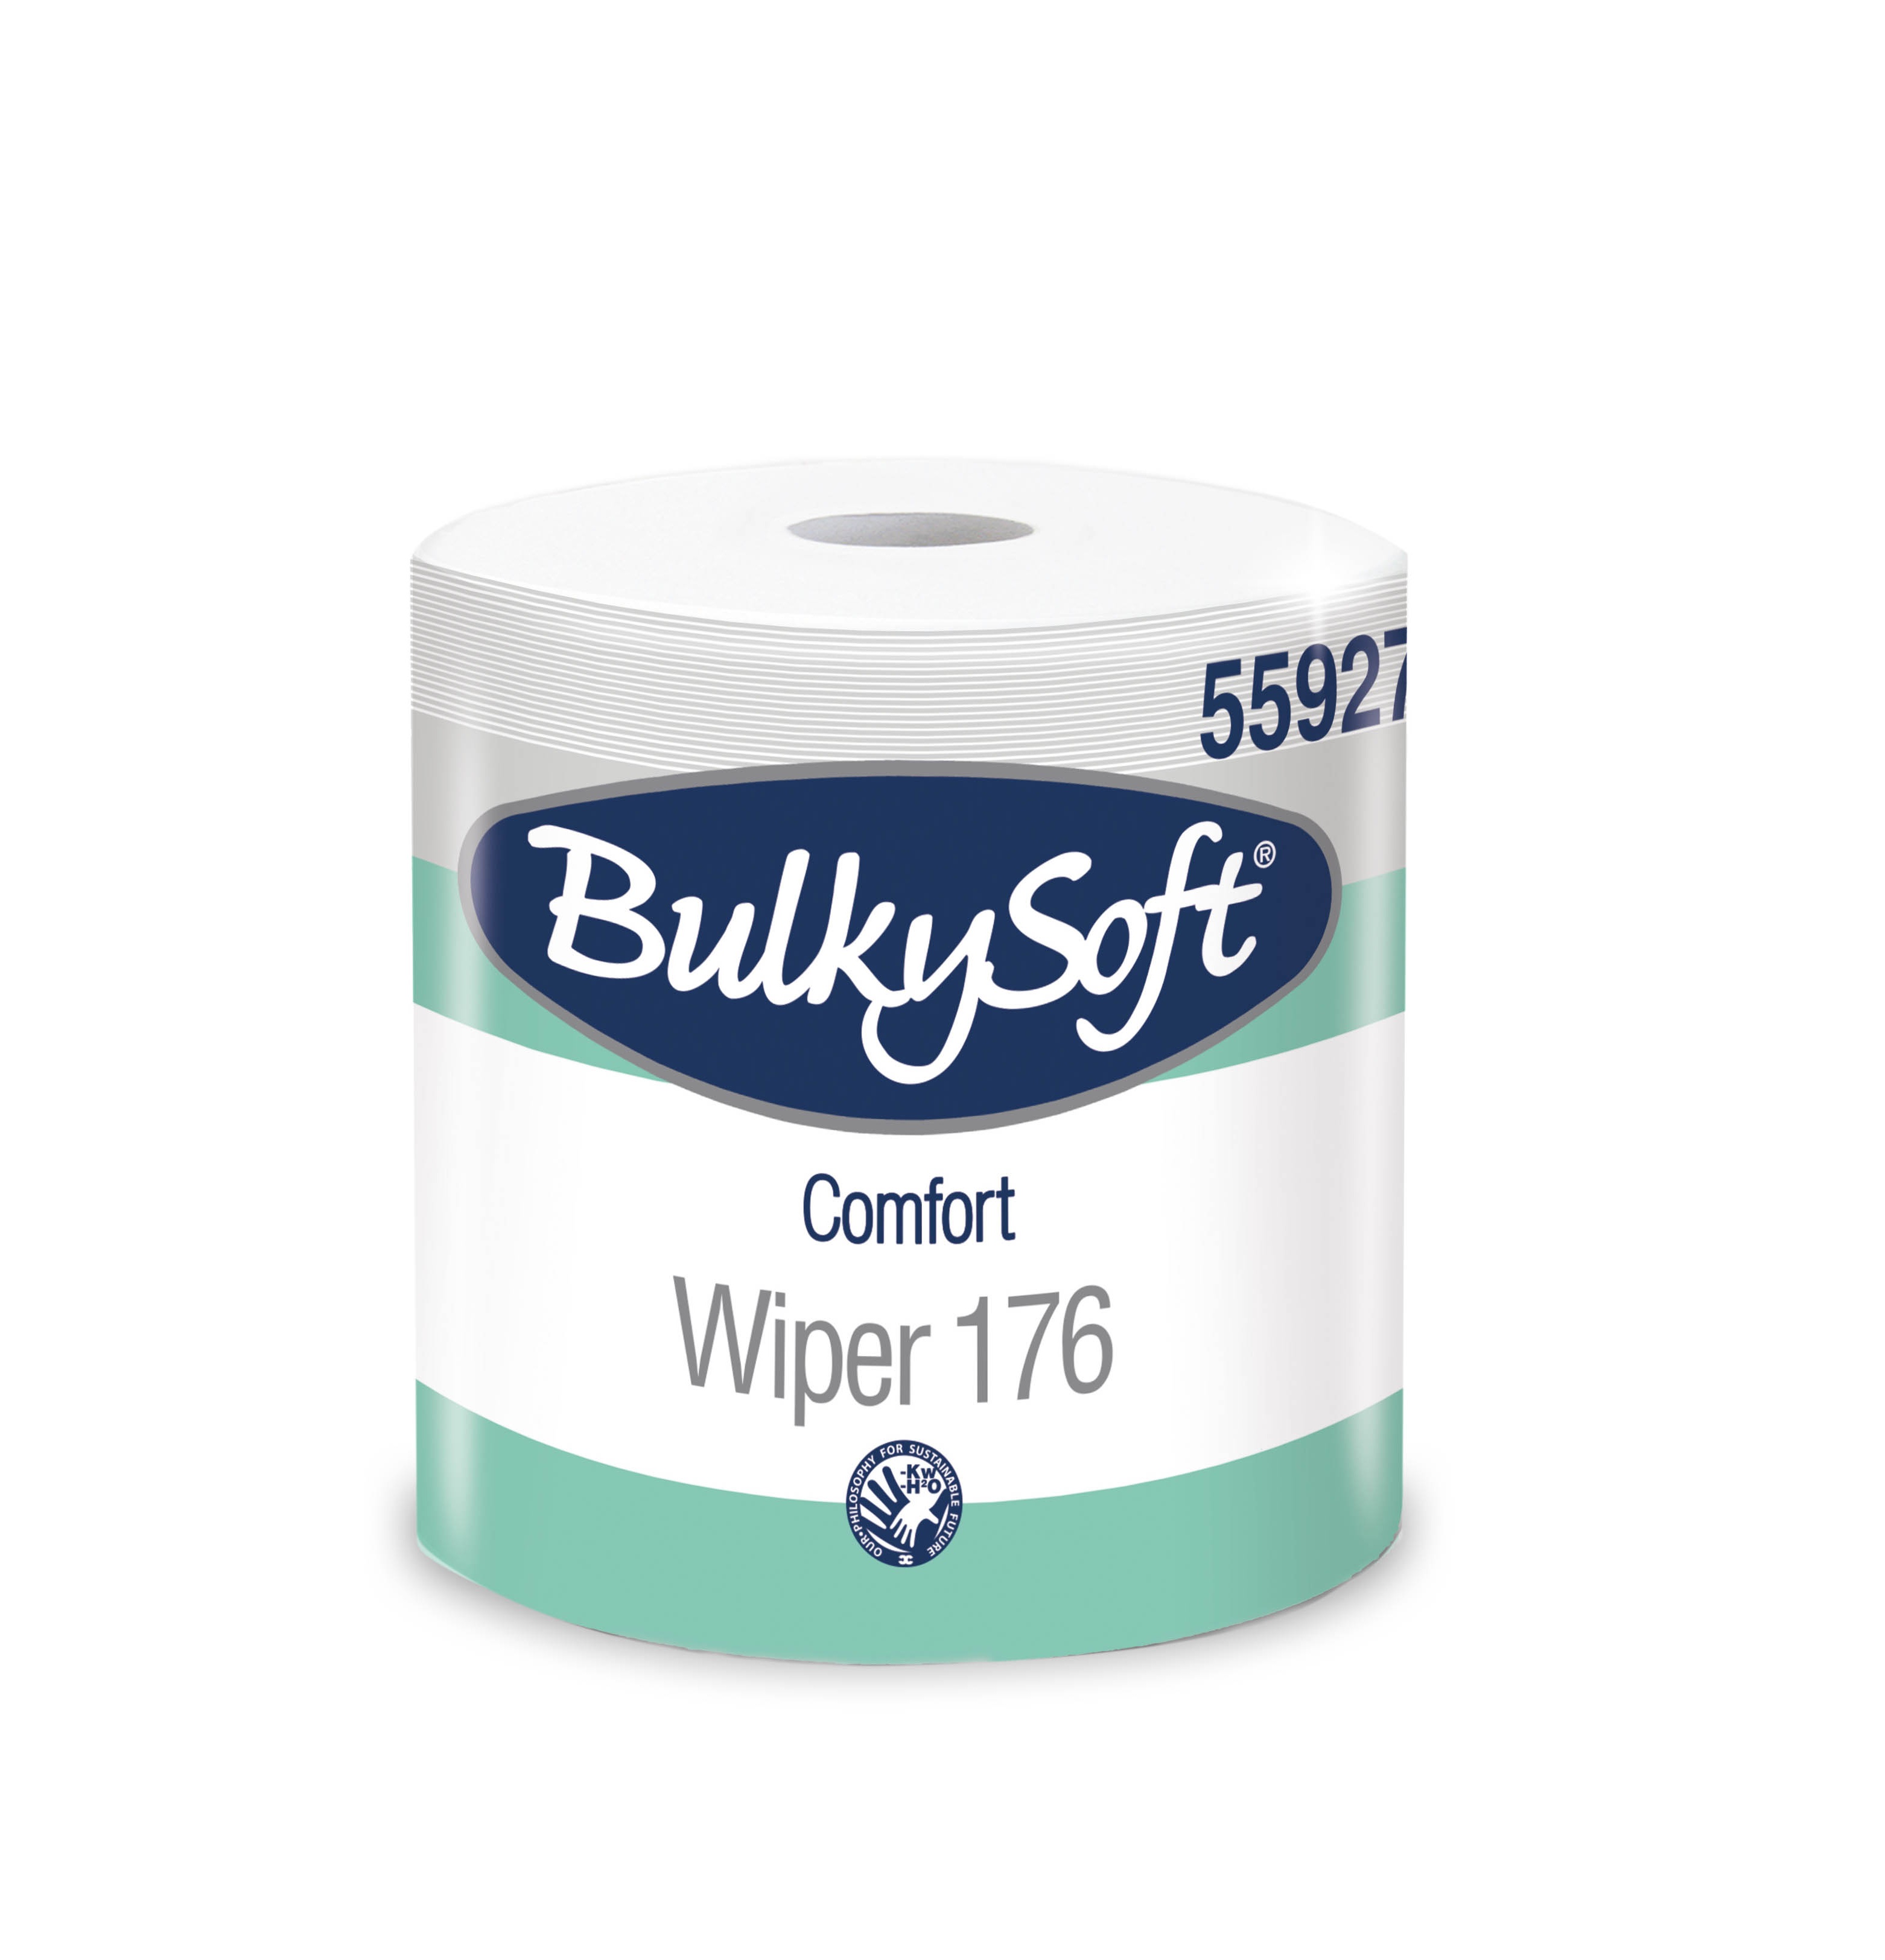 Bulkysoft Comfort Wiper-176 papierové utierky 2 vrstvové biele